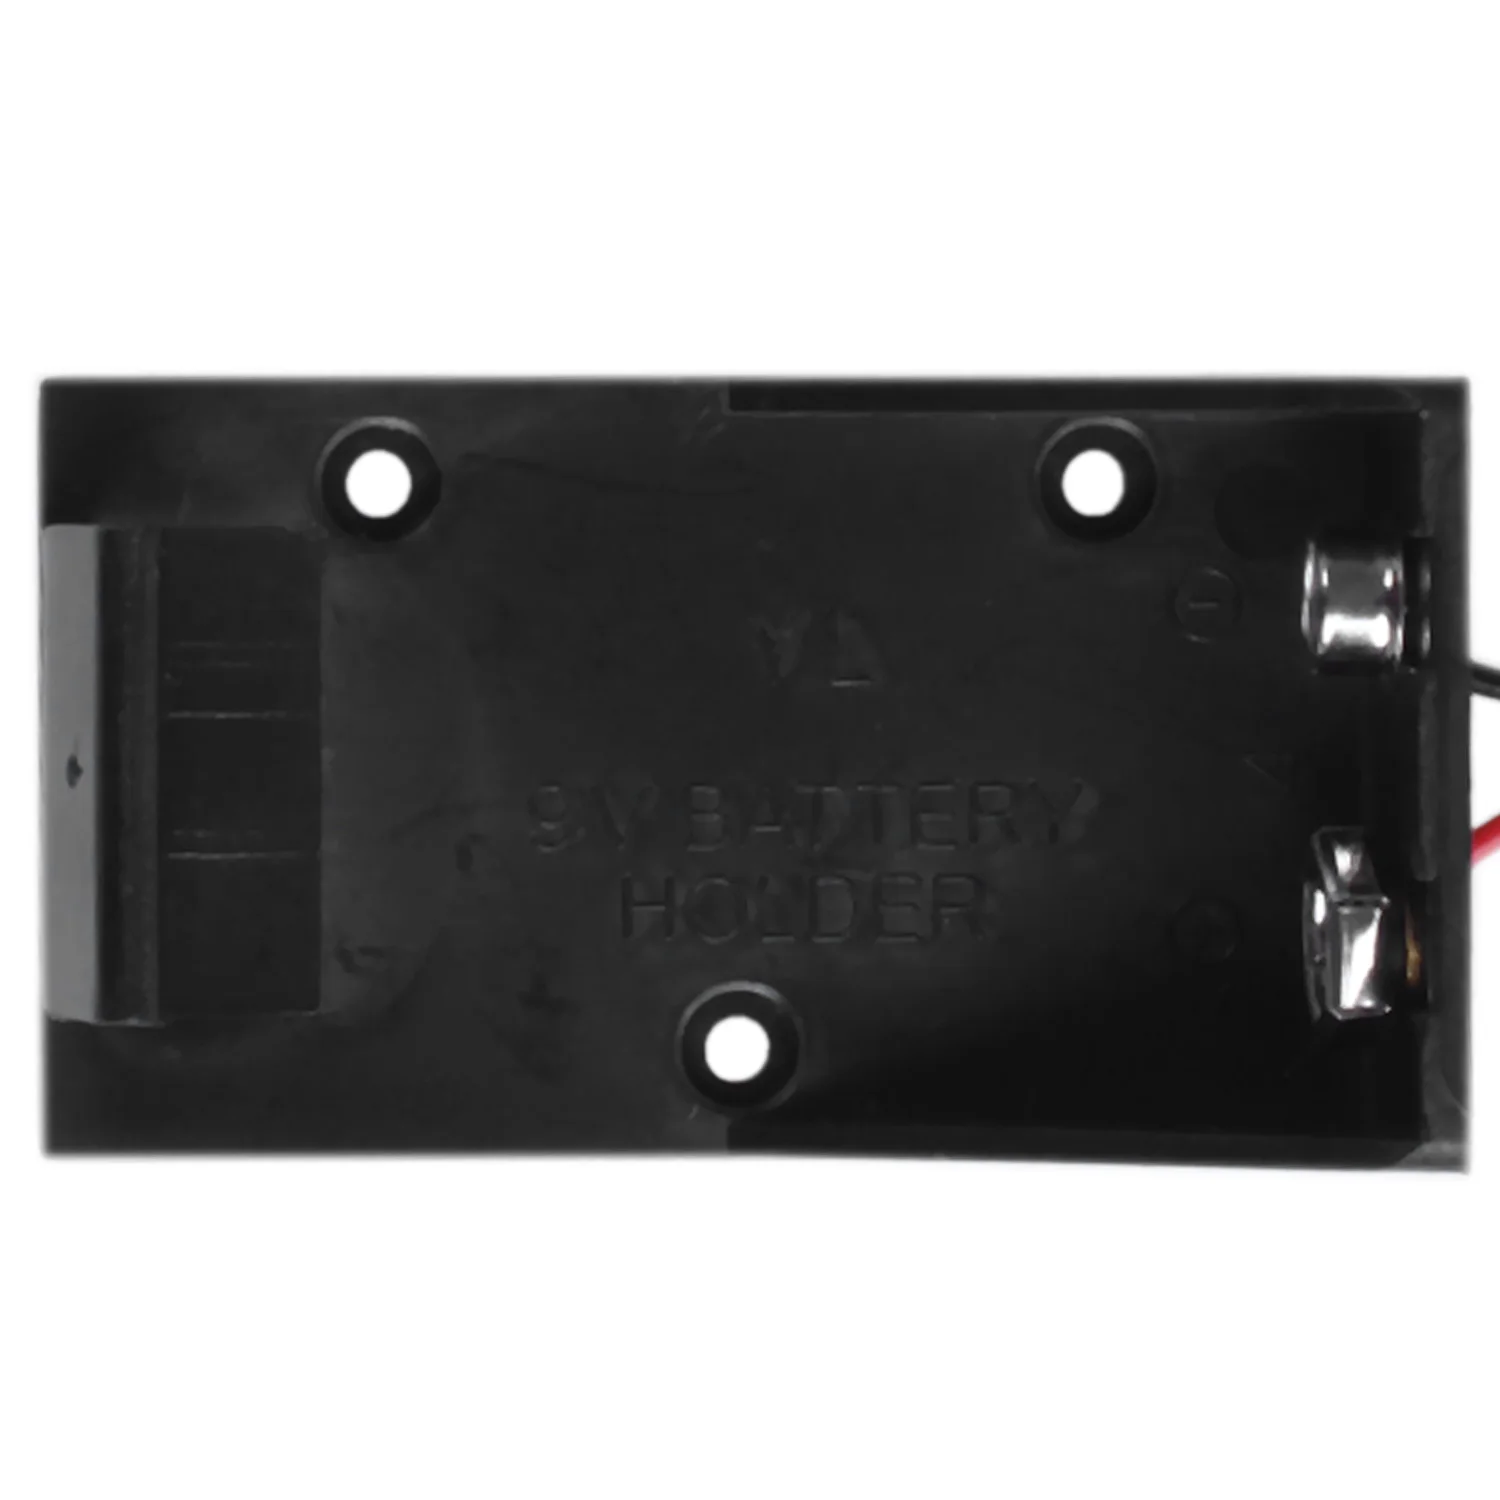 9 В Вольт Держатель Батареи Коробка Чехол Штекер 5.5X2.1 для Макетной платы Arduino Блок питания